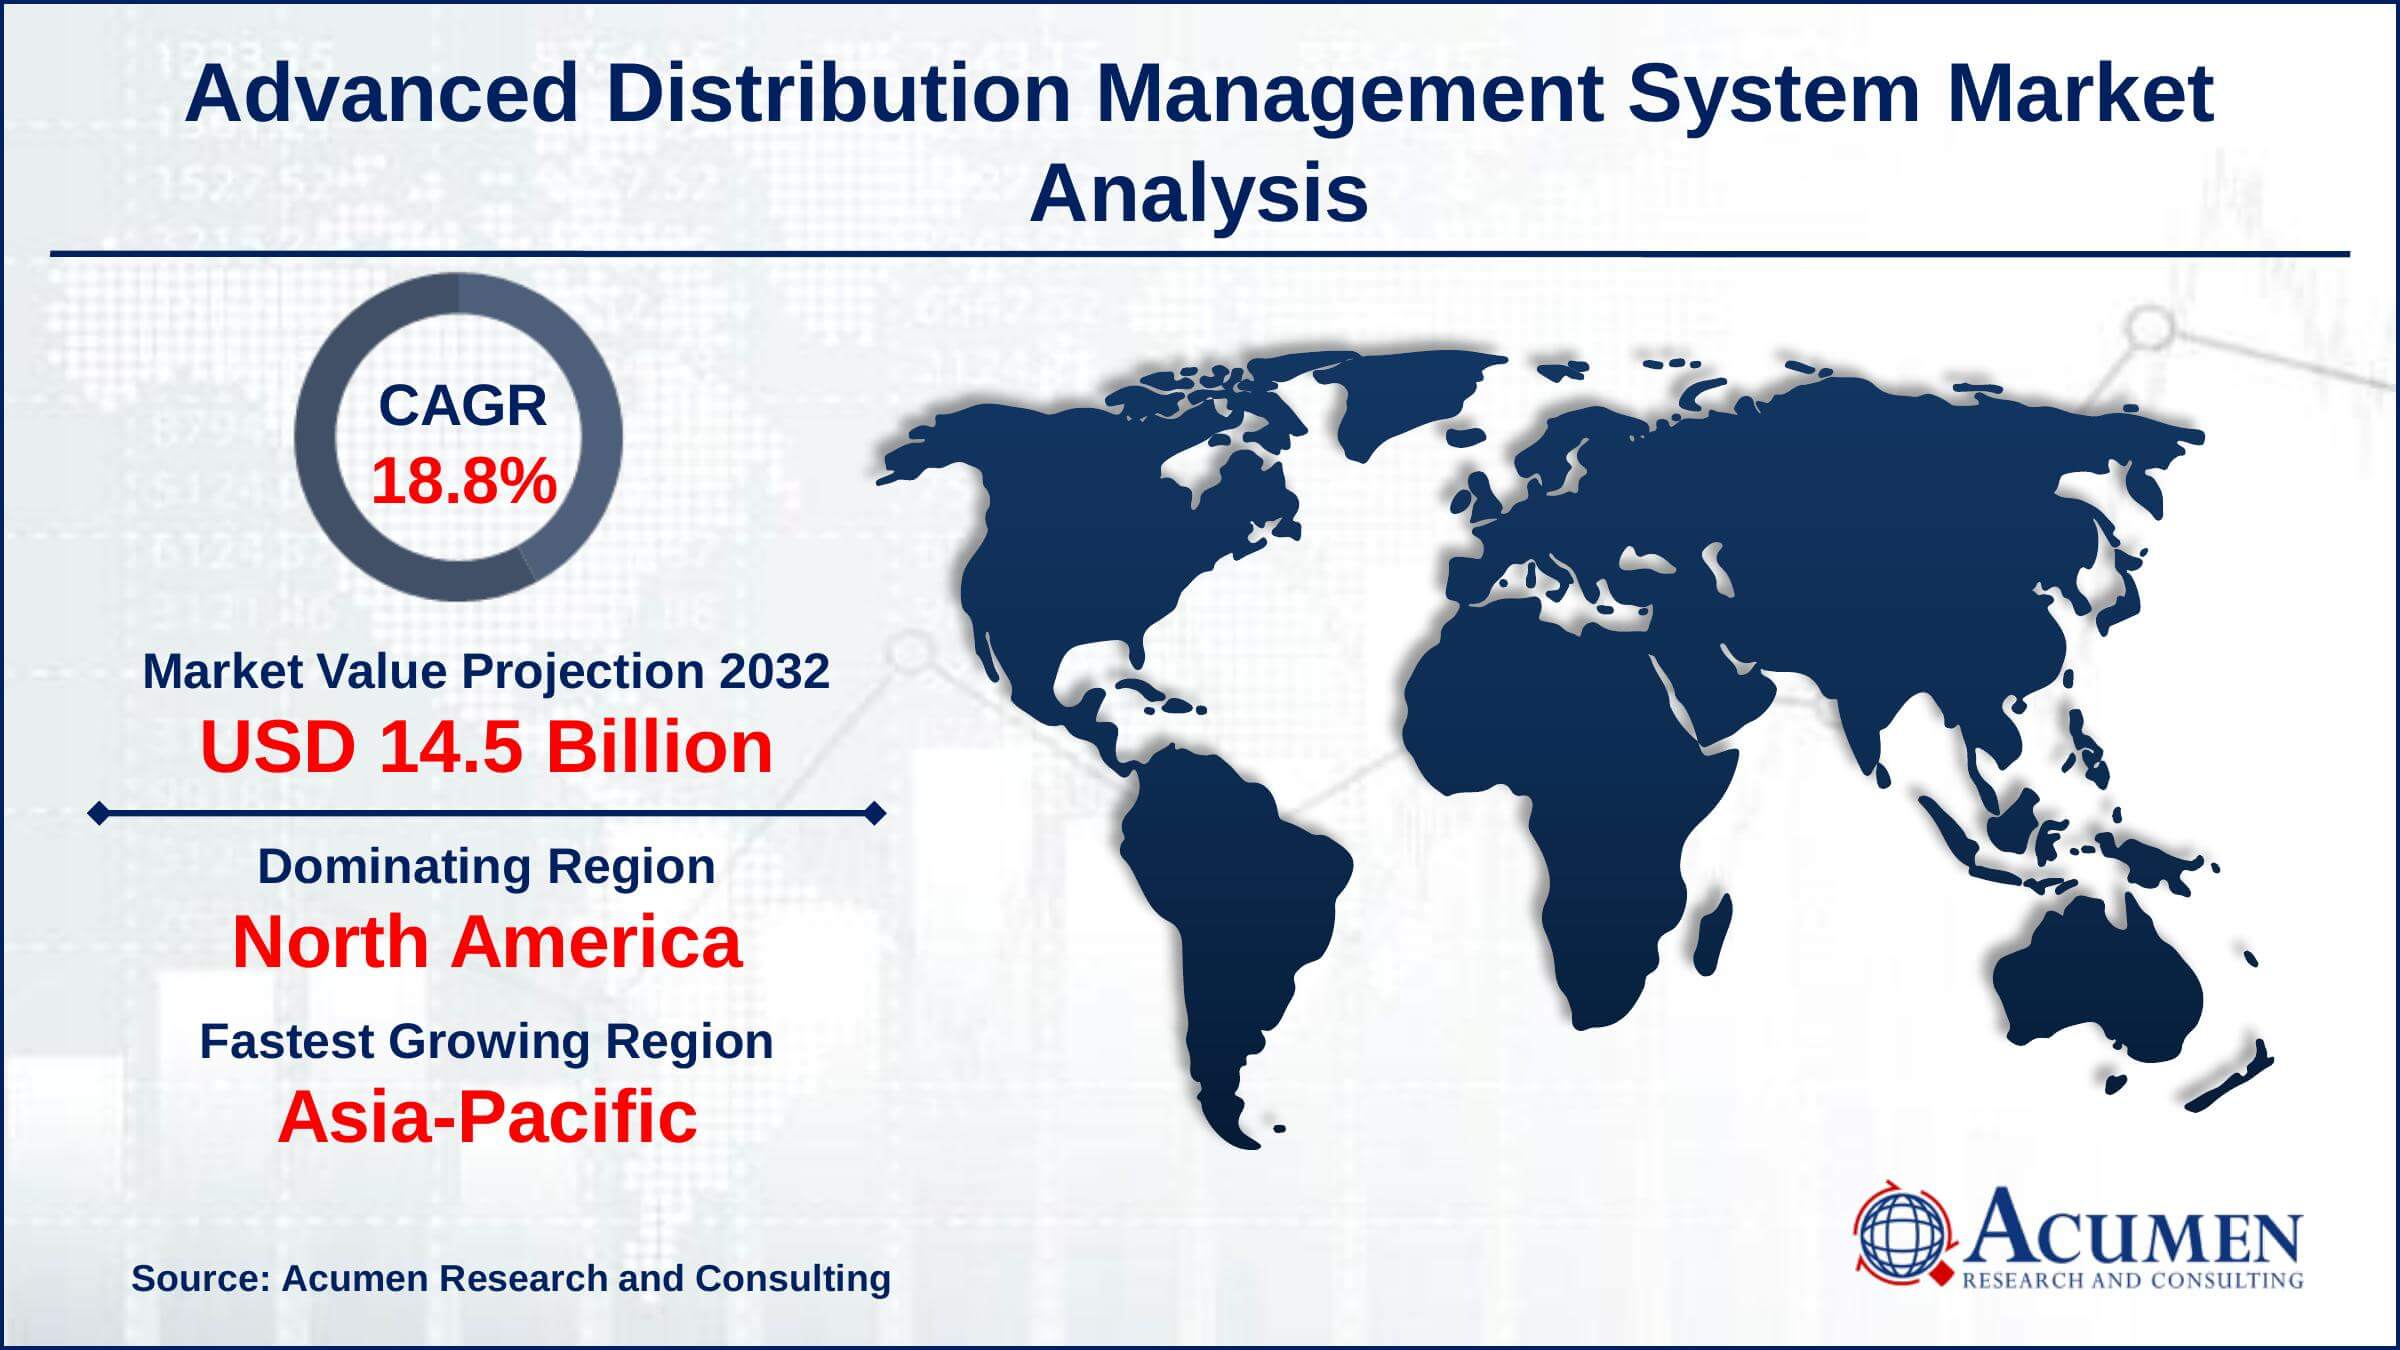 Global Advanced Distribution Management System Market Trends